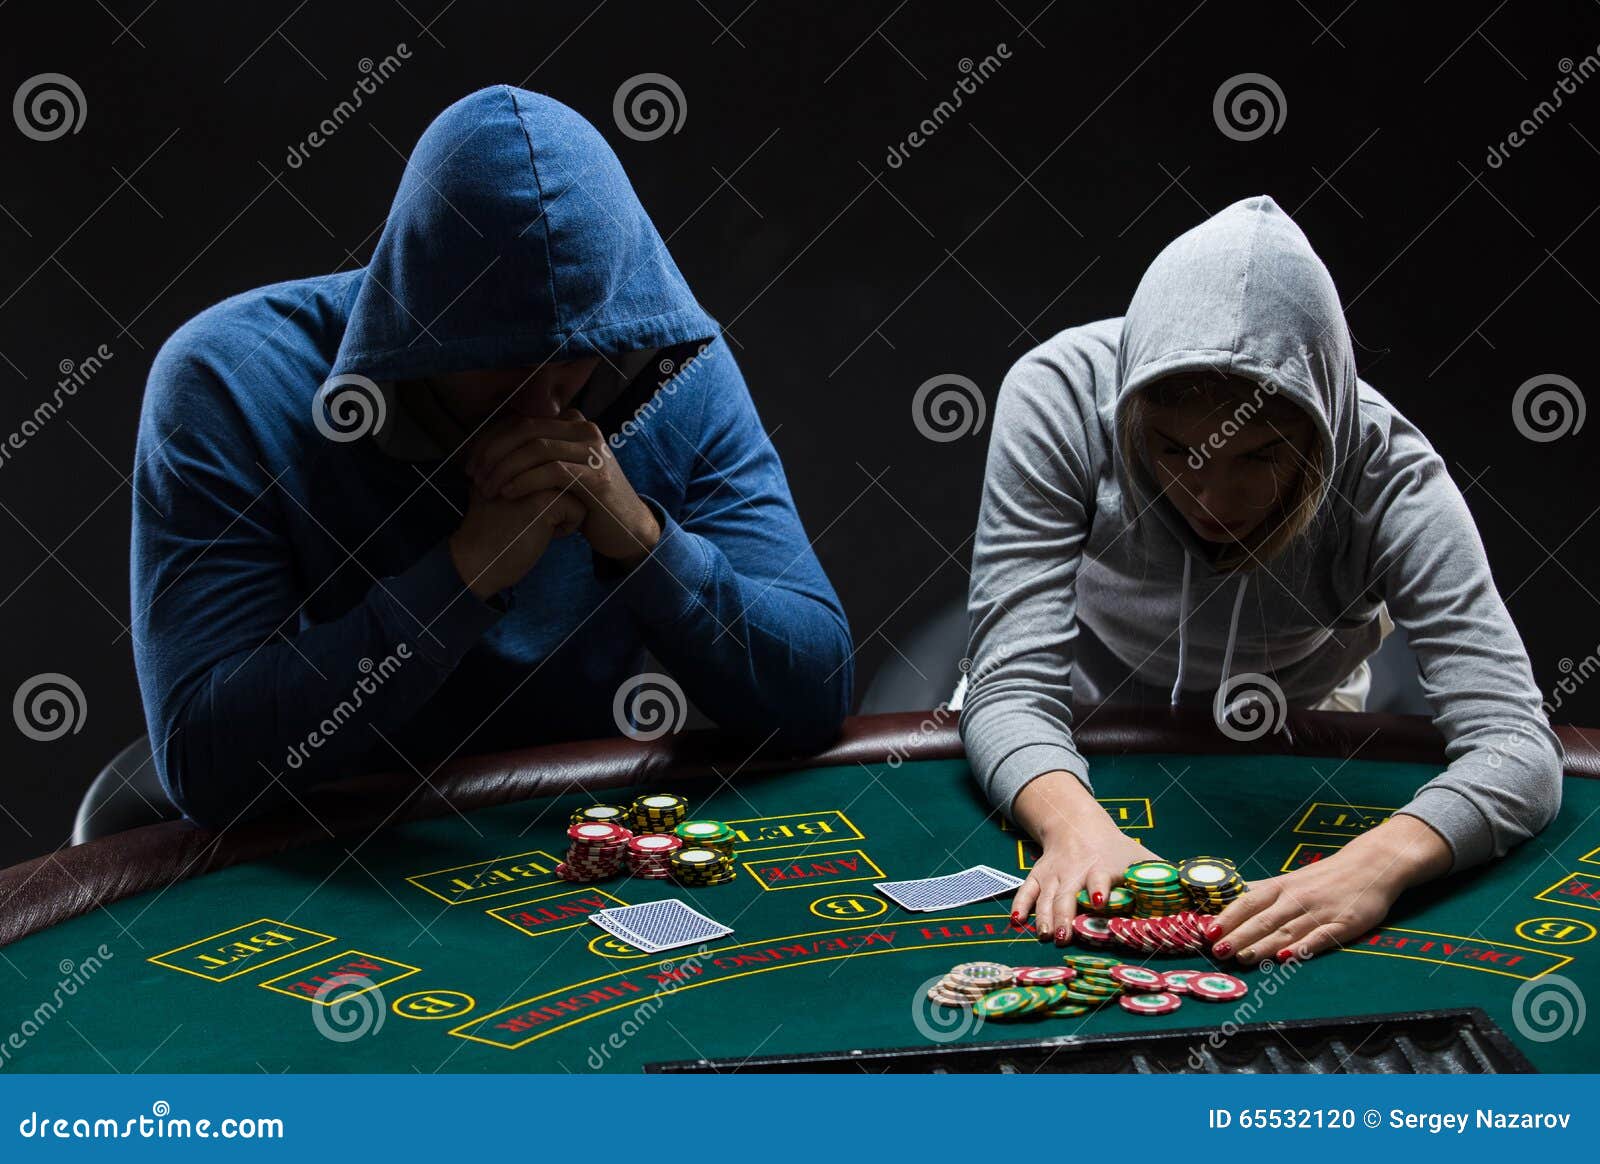 exploit poker team